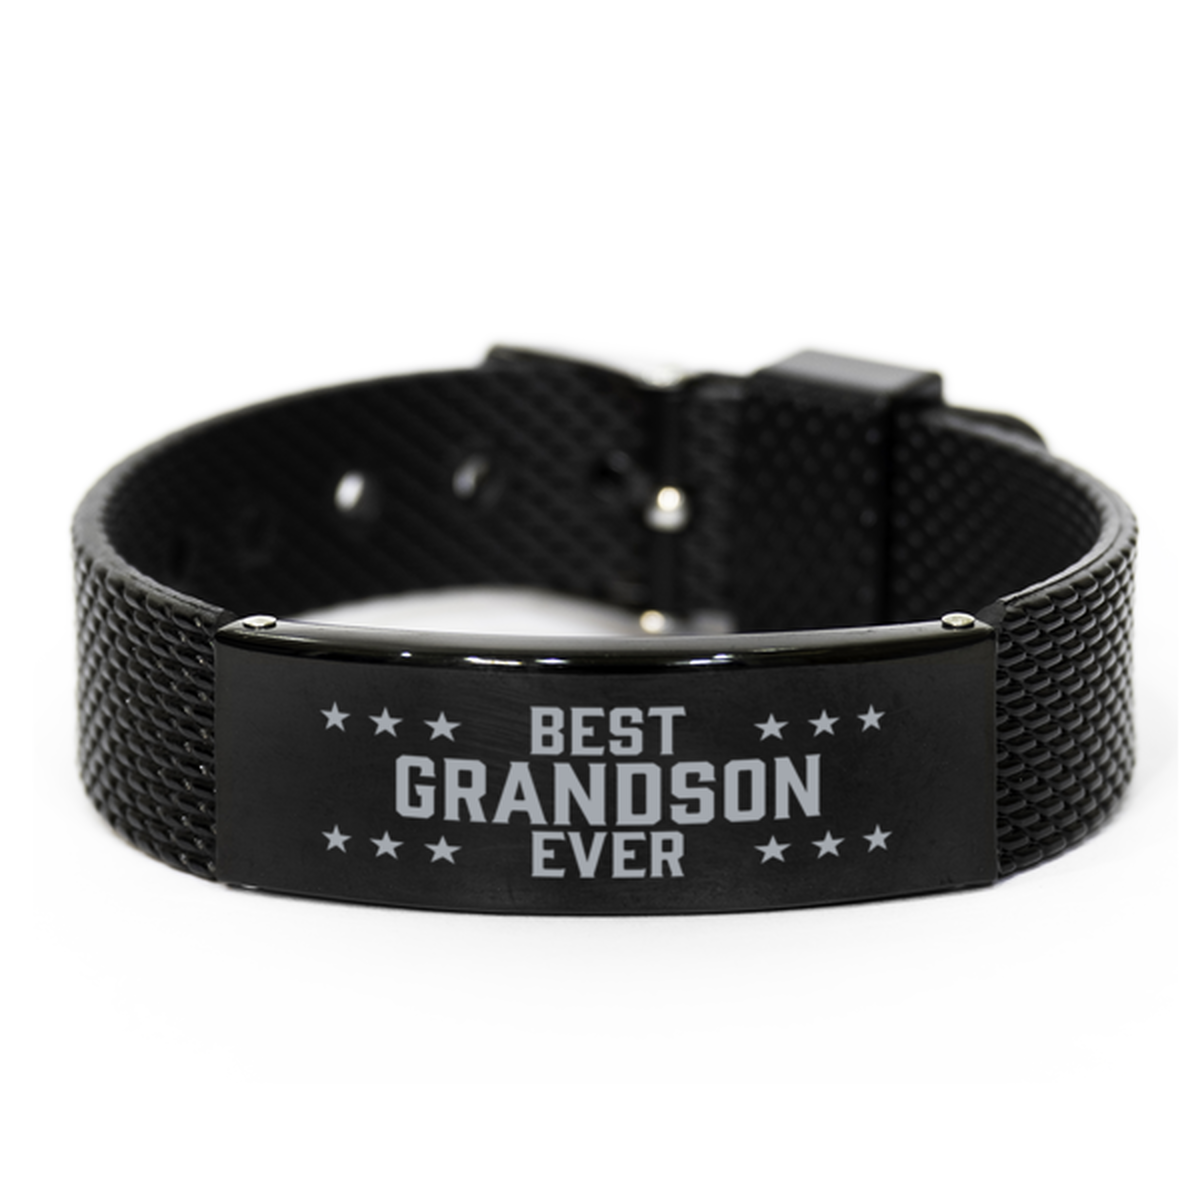 Best Grandson Ever Grandson Gifts, Gag Engraved Bracelet For Grandson, Best Family Gifts For Men